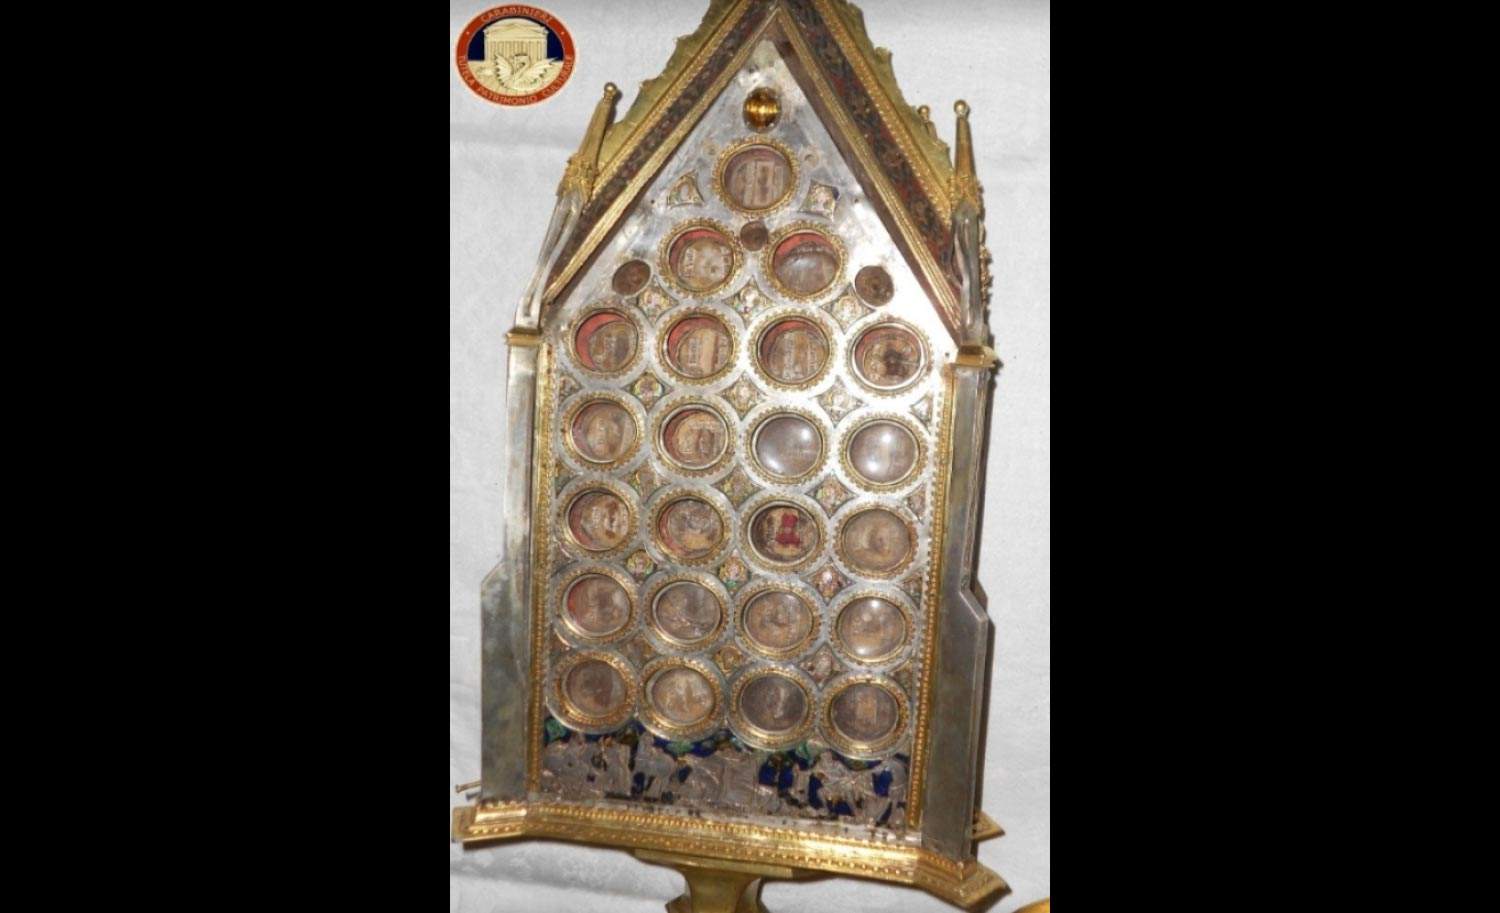 Riconsegnato oggi a Siena il reliquiario di San Galgano: era stato rubato nel 1989